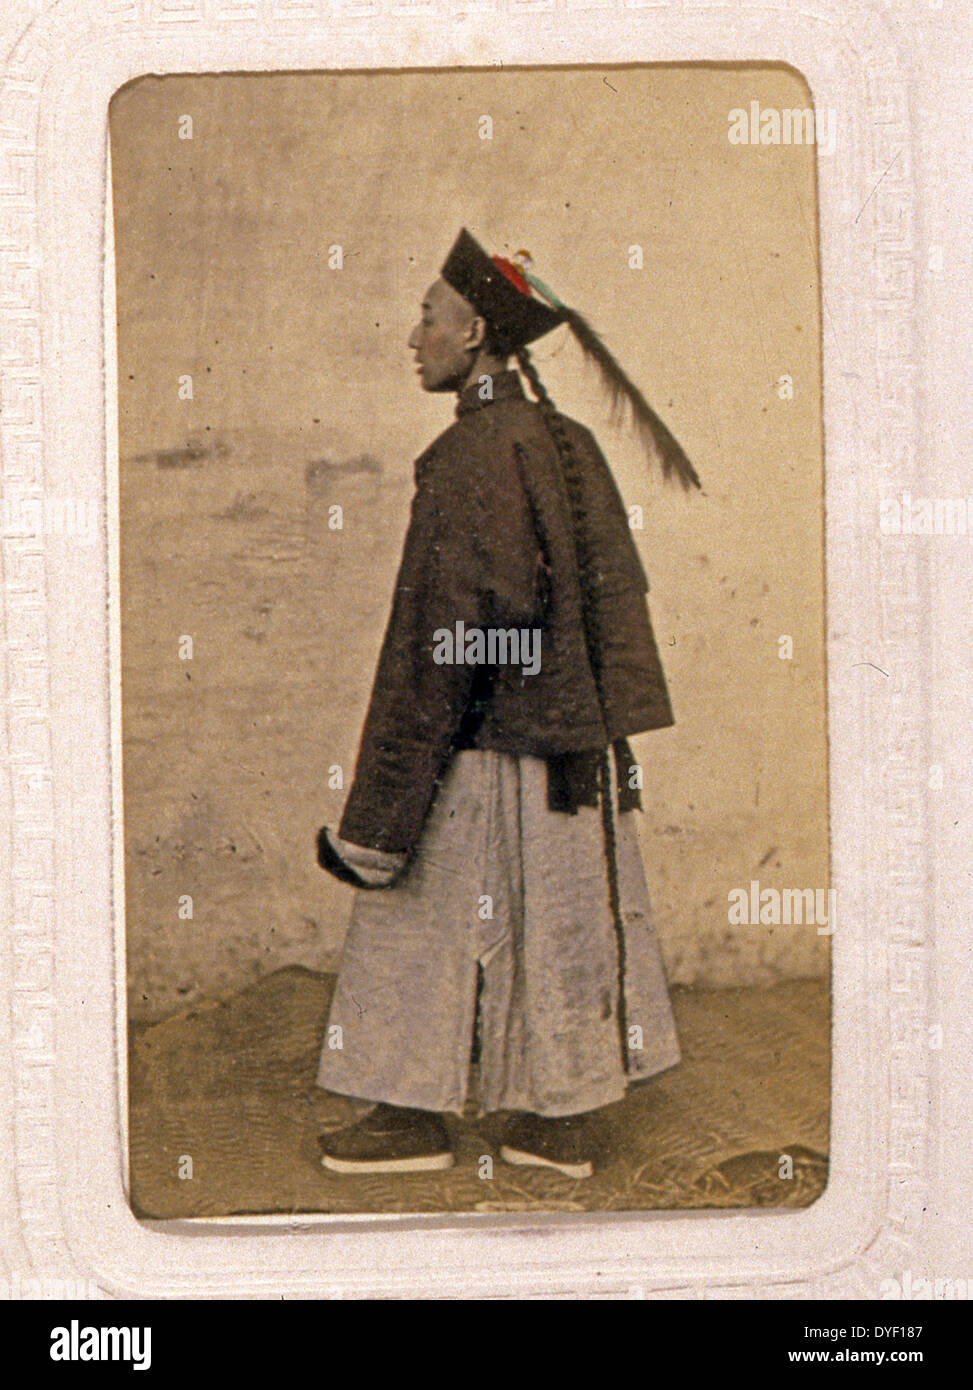 Ritratti di un burocrate cinese (mandarino) da John Thomson, 1837-1921, fotografo. Pubblicato: tra il 1870 e il 1872. Foto Stock